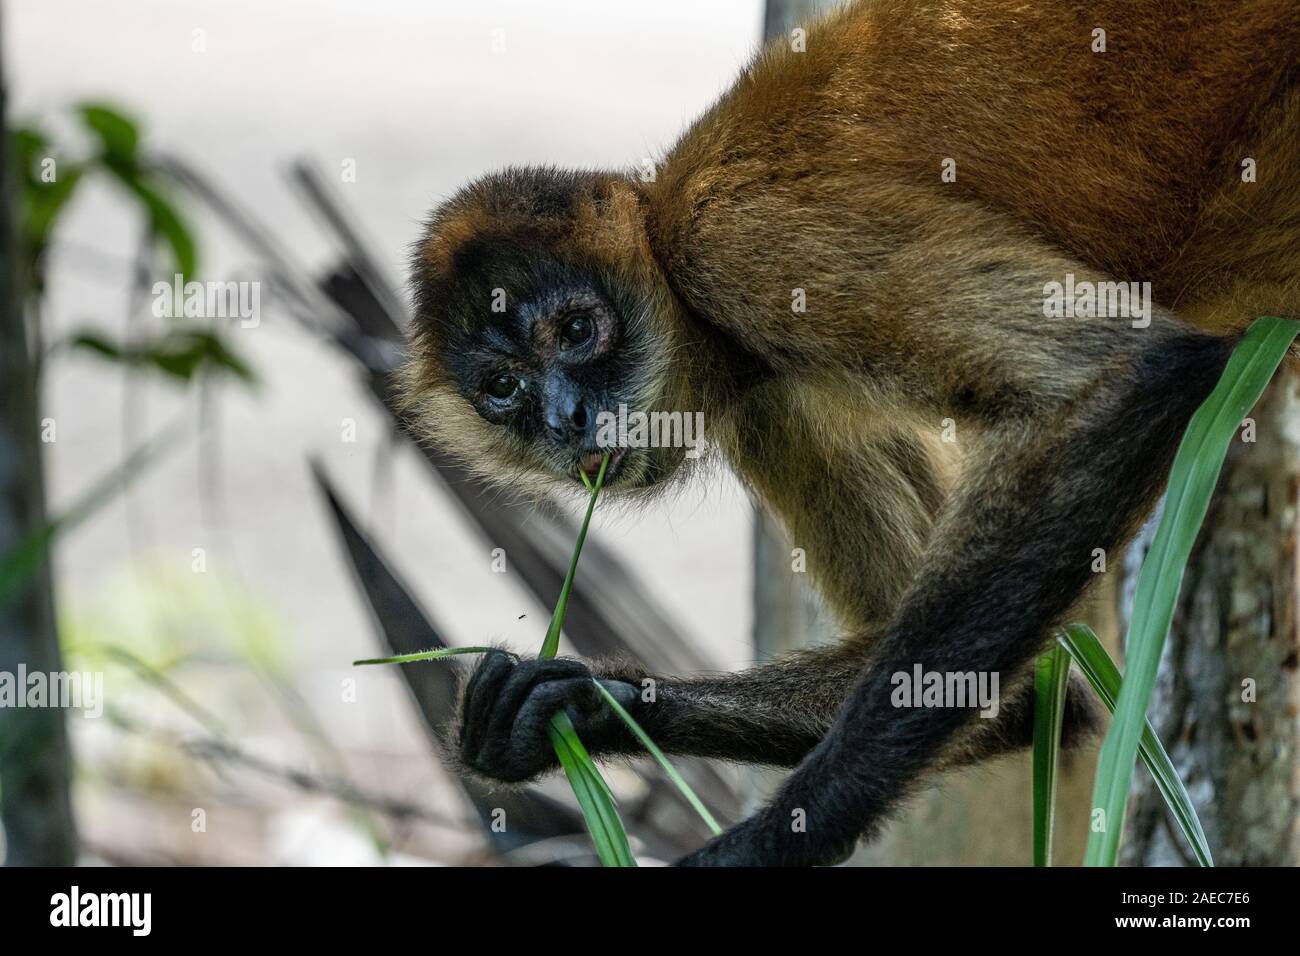 Portrait d'un singe-araignée de Geoffroy (Ateles geoffroyi), également connu sous le nom de singe araignée aux mains noires, est une espèce de singe-araignée, un typ Banque D'Images